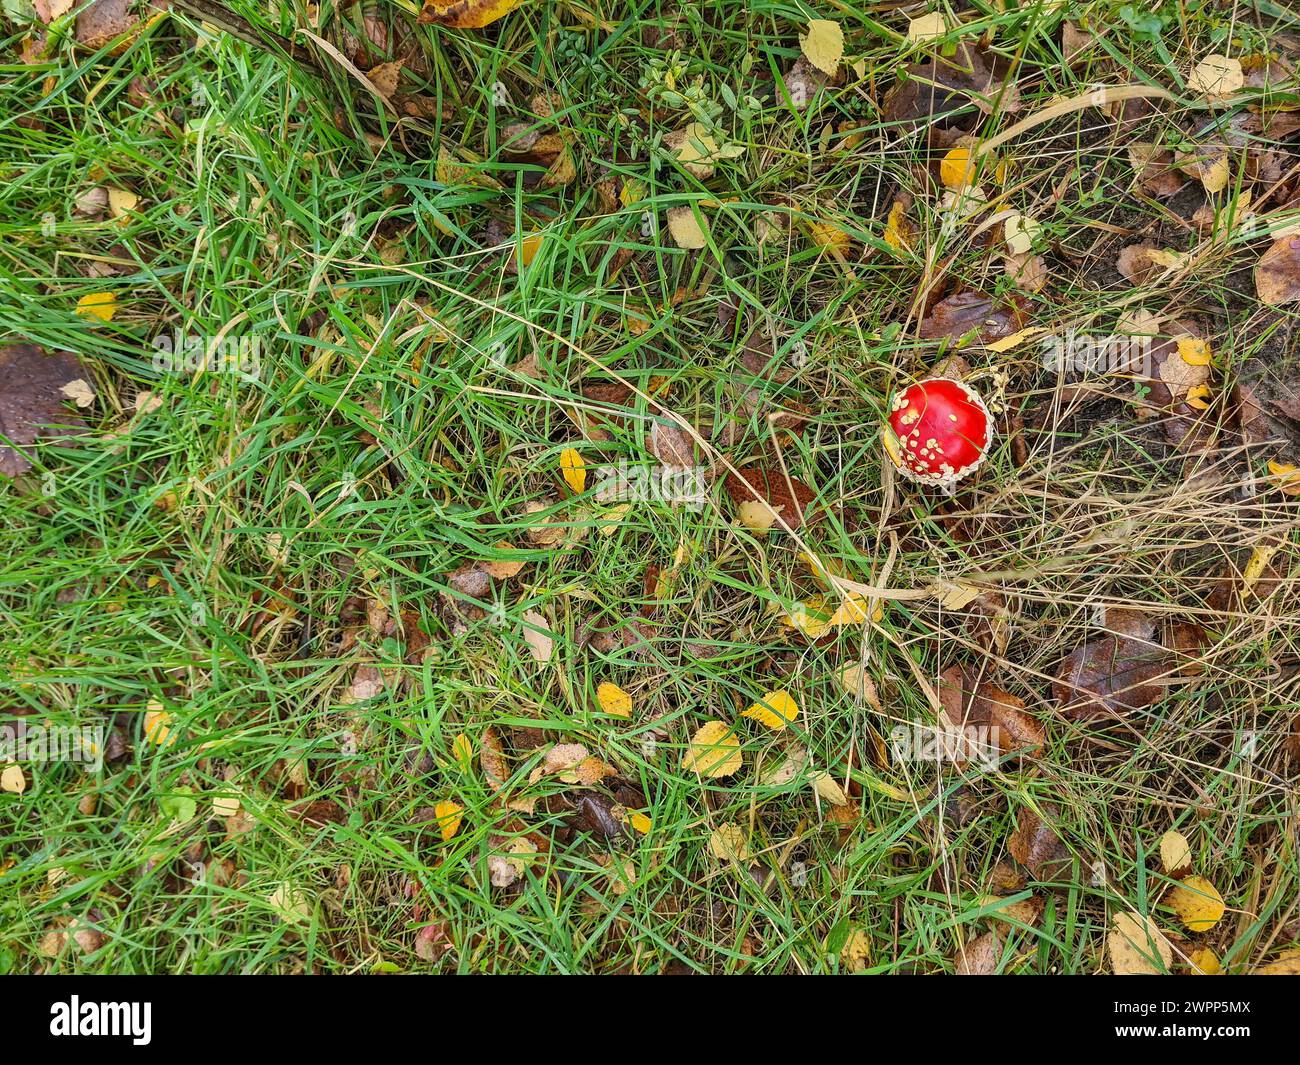 Un piccolo fungo rosso sul fondo della foresta, raccolta dei funghi, Germania Foto Stock